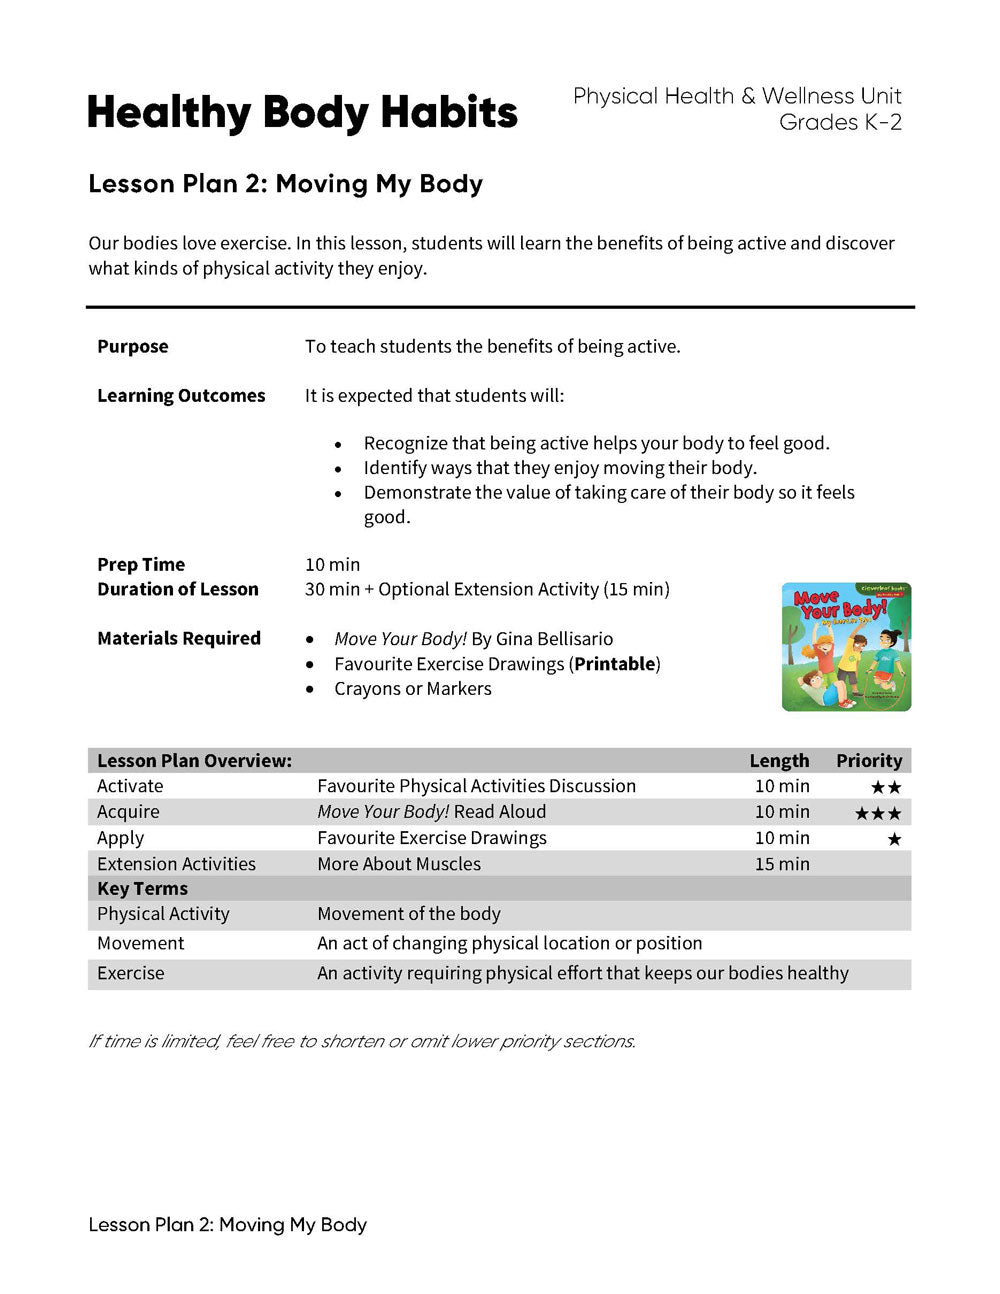 Healthy Body Habits - Lesson Plan Bundle (4 Lesson Plans)